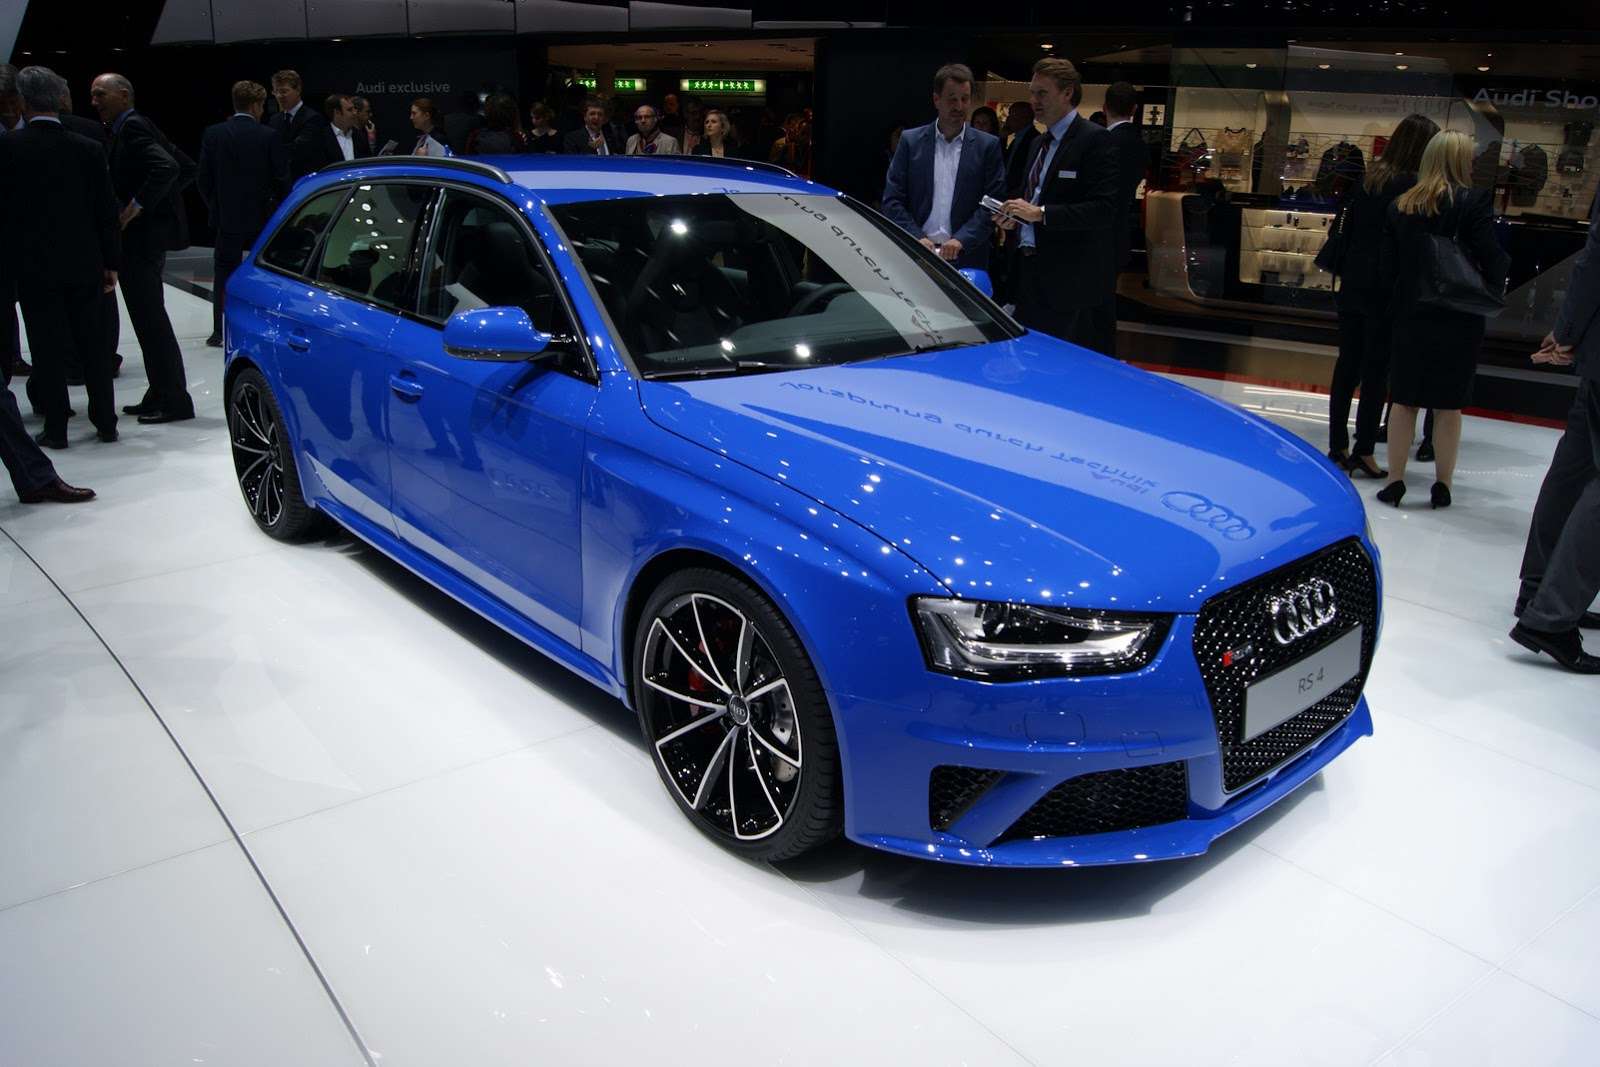 Audi Geneva 2014